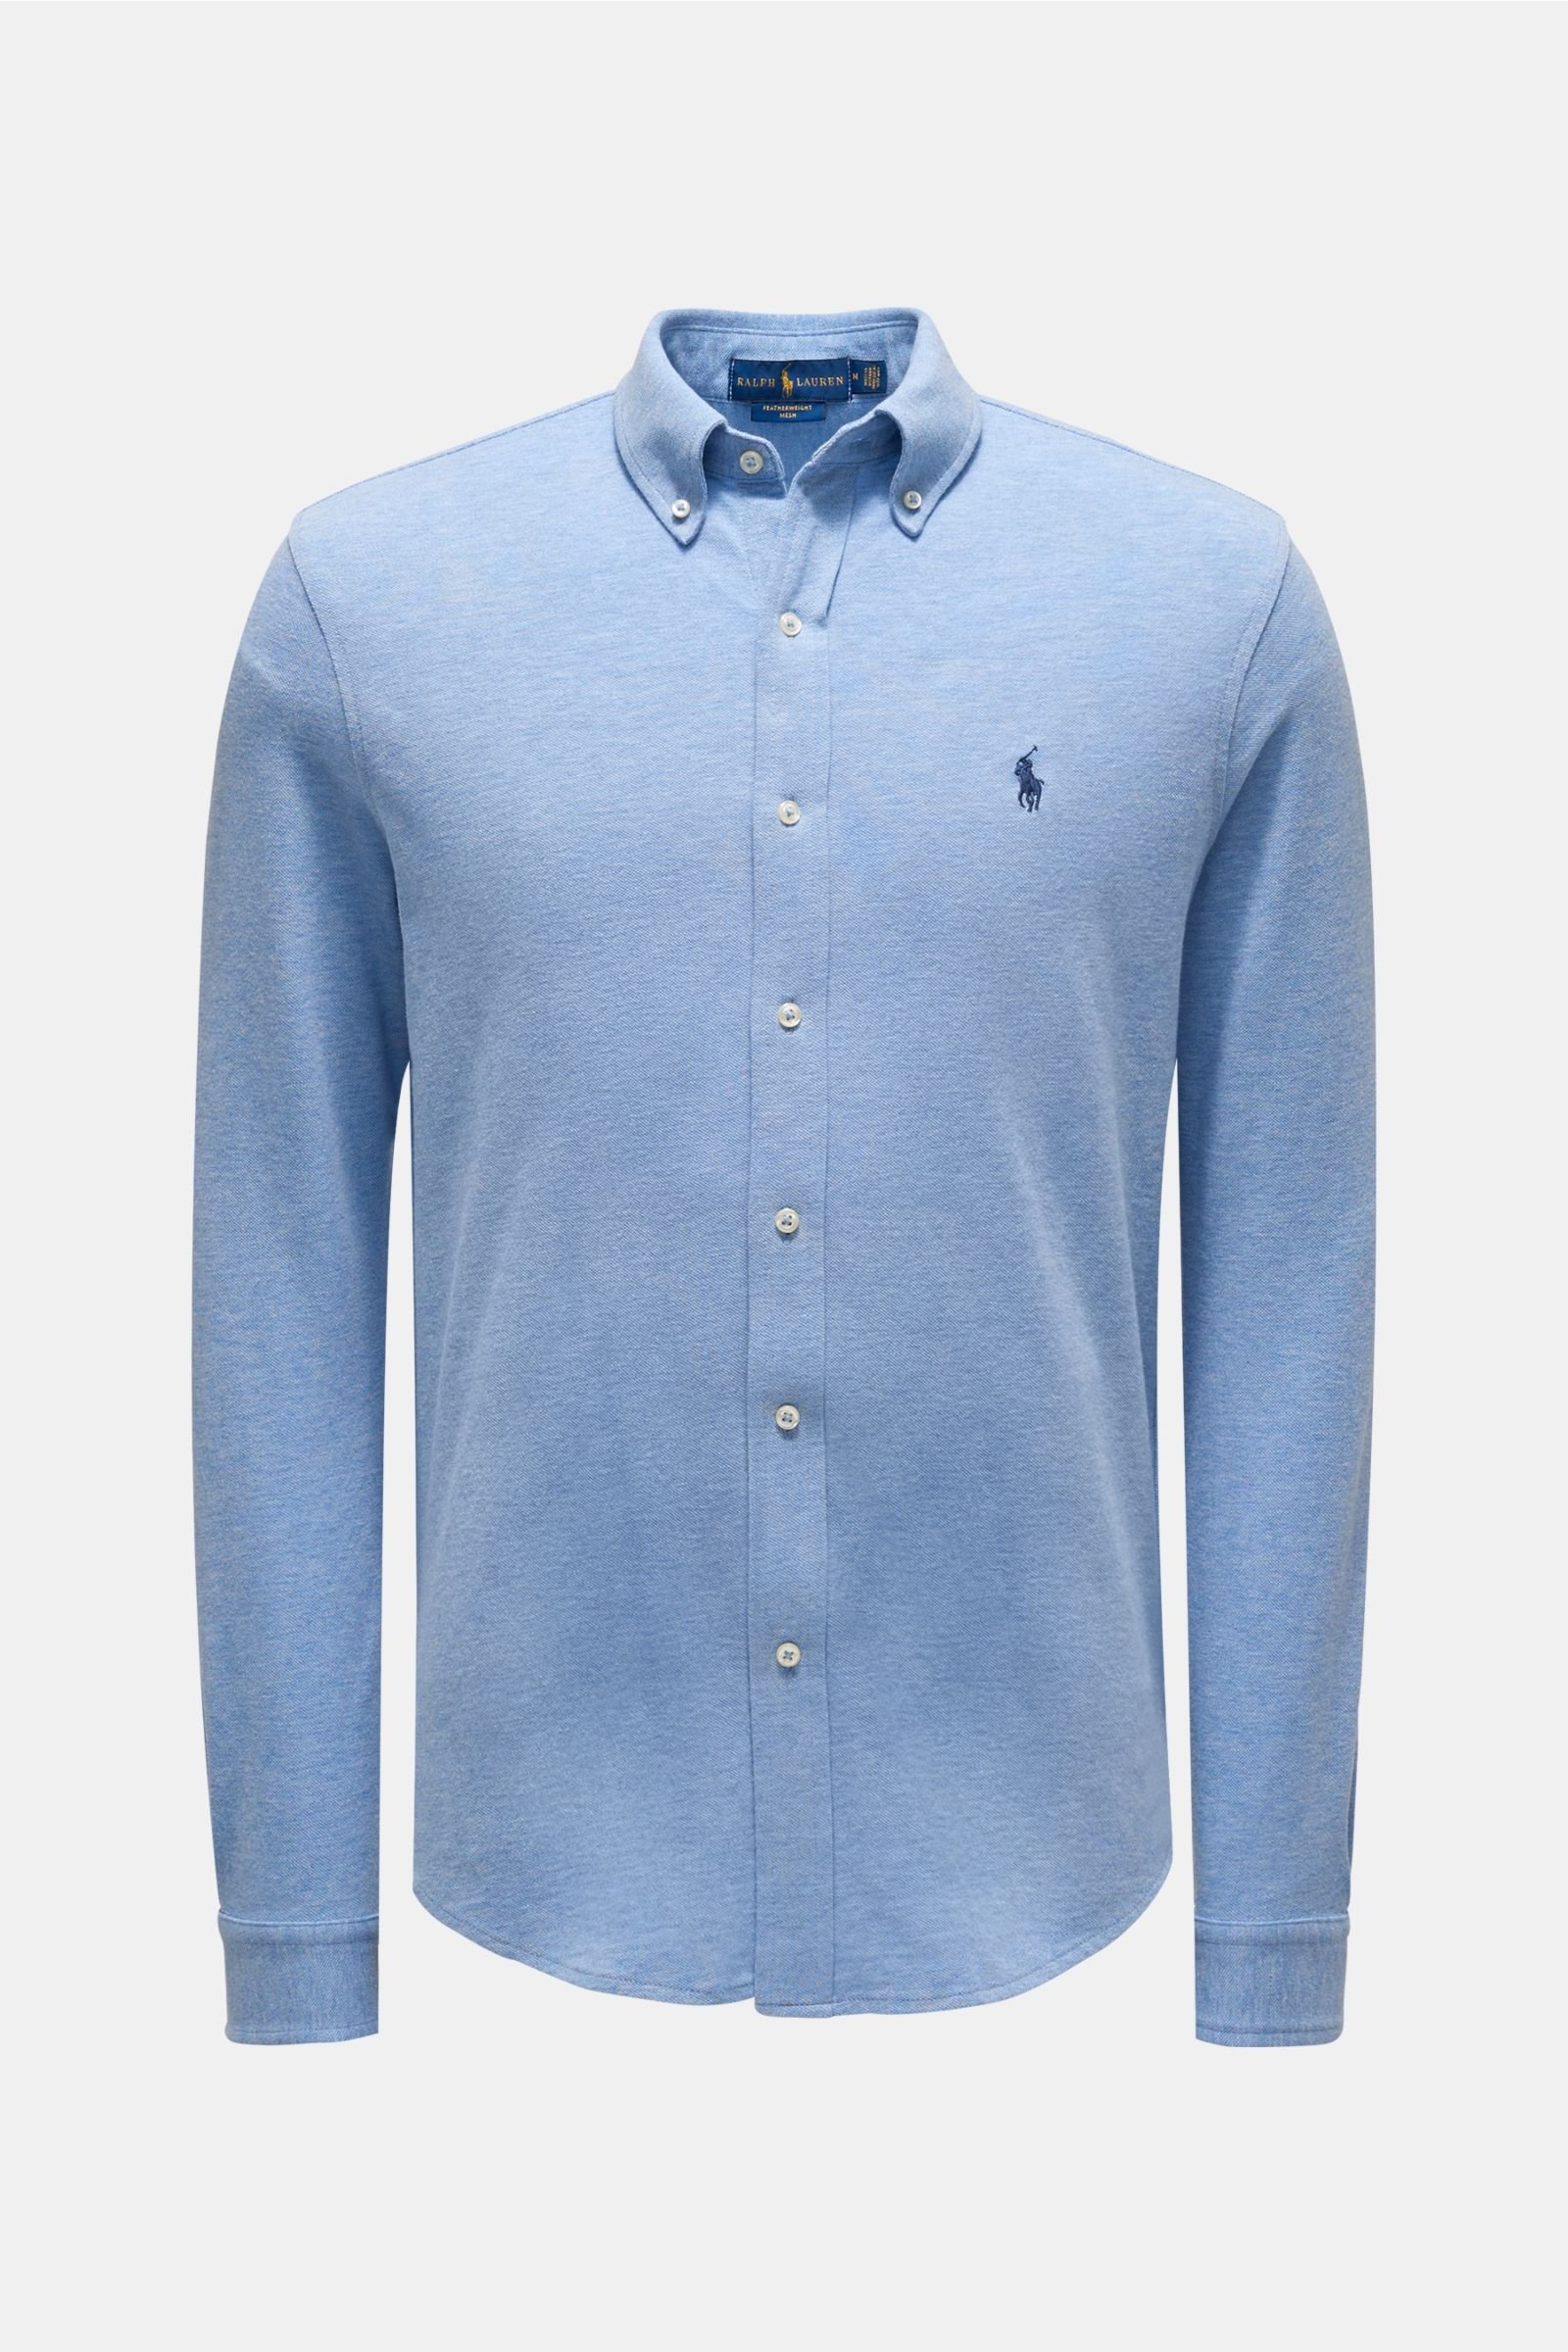 Jersey shirt button-down collar smoky blue